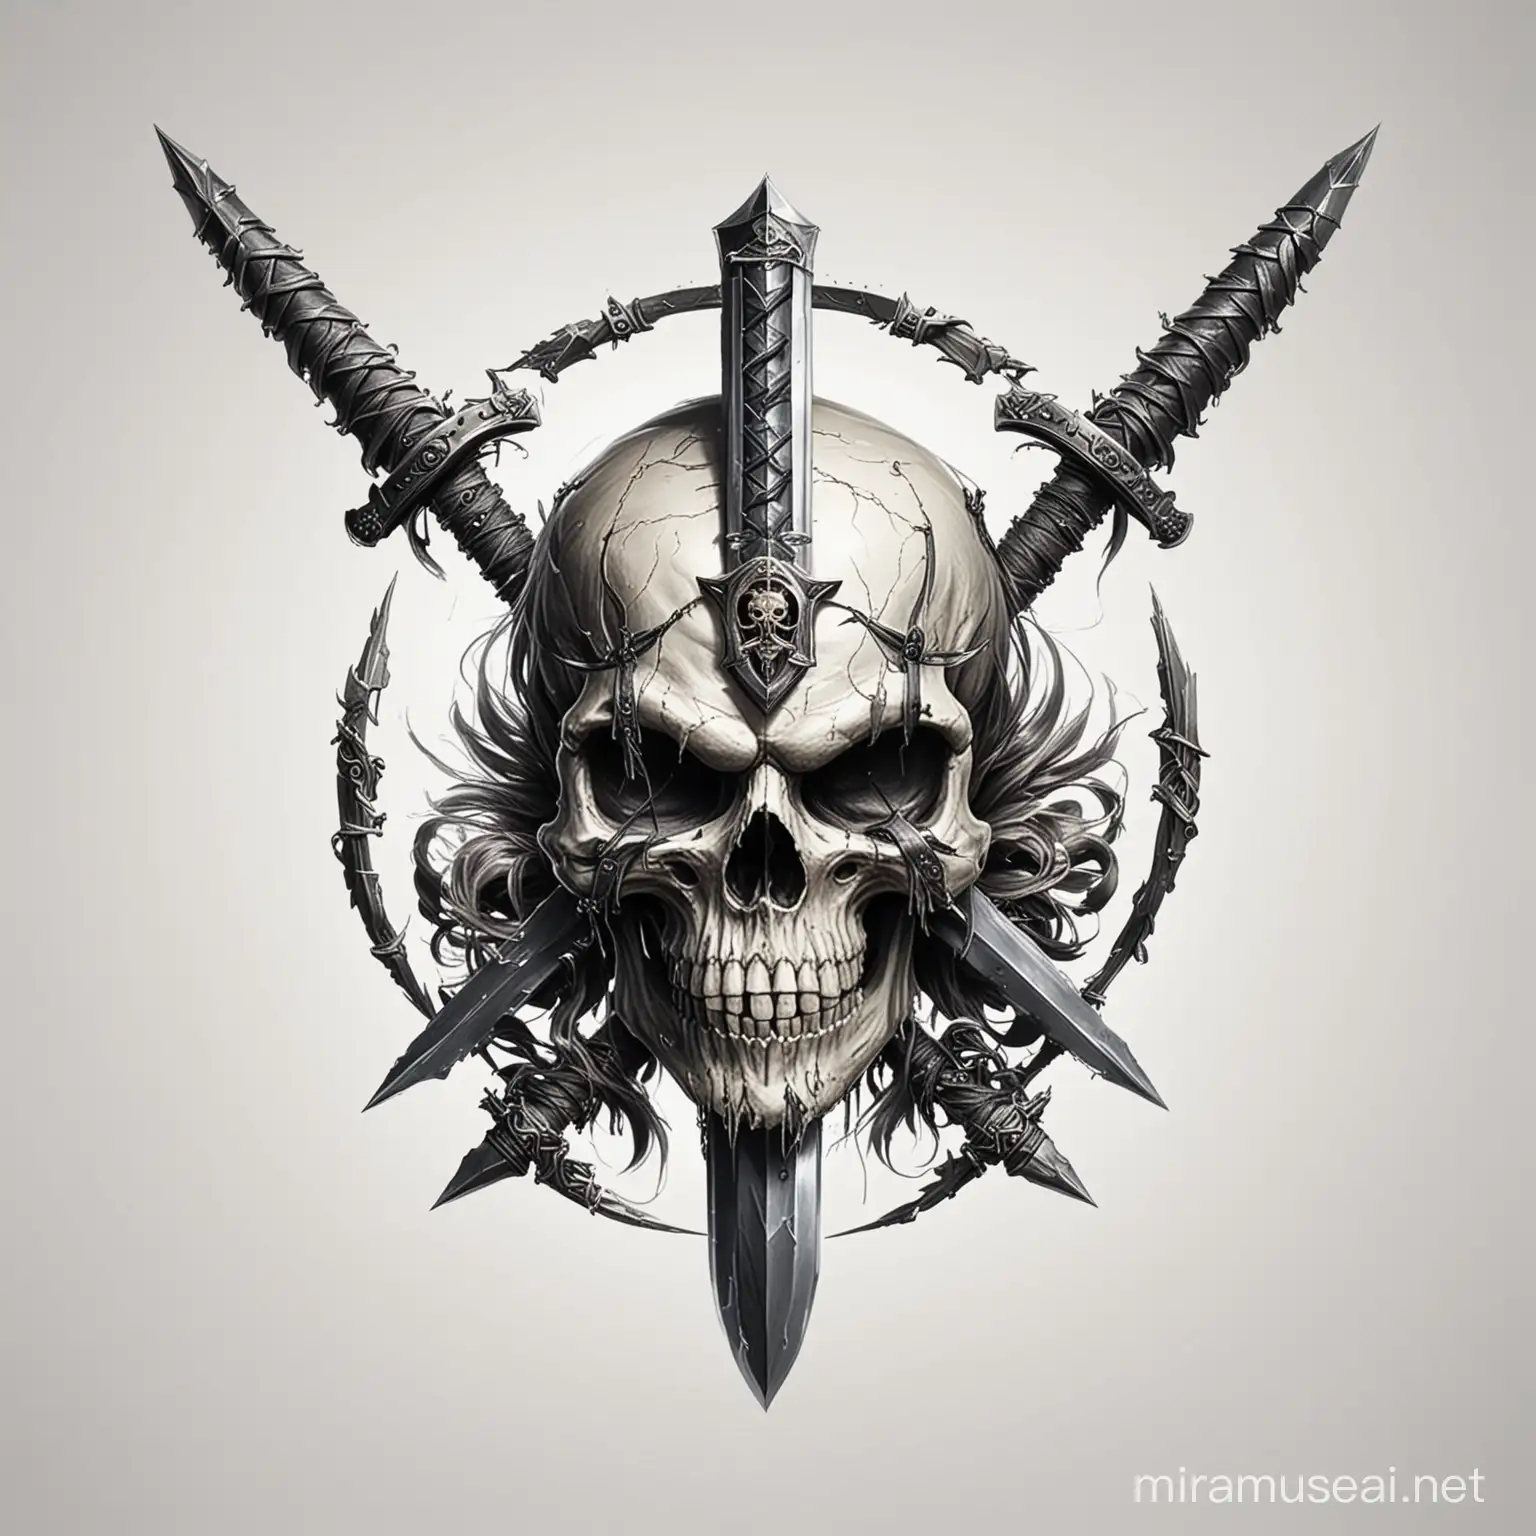 Skull and Swords Logo on White Background